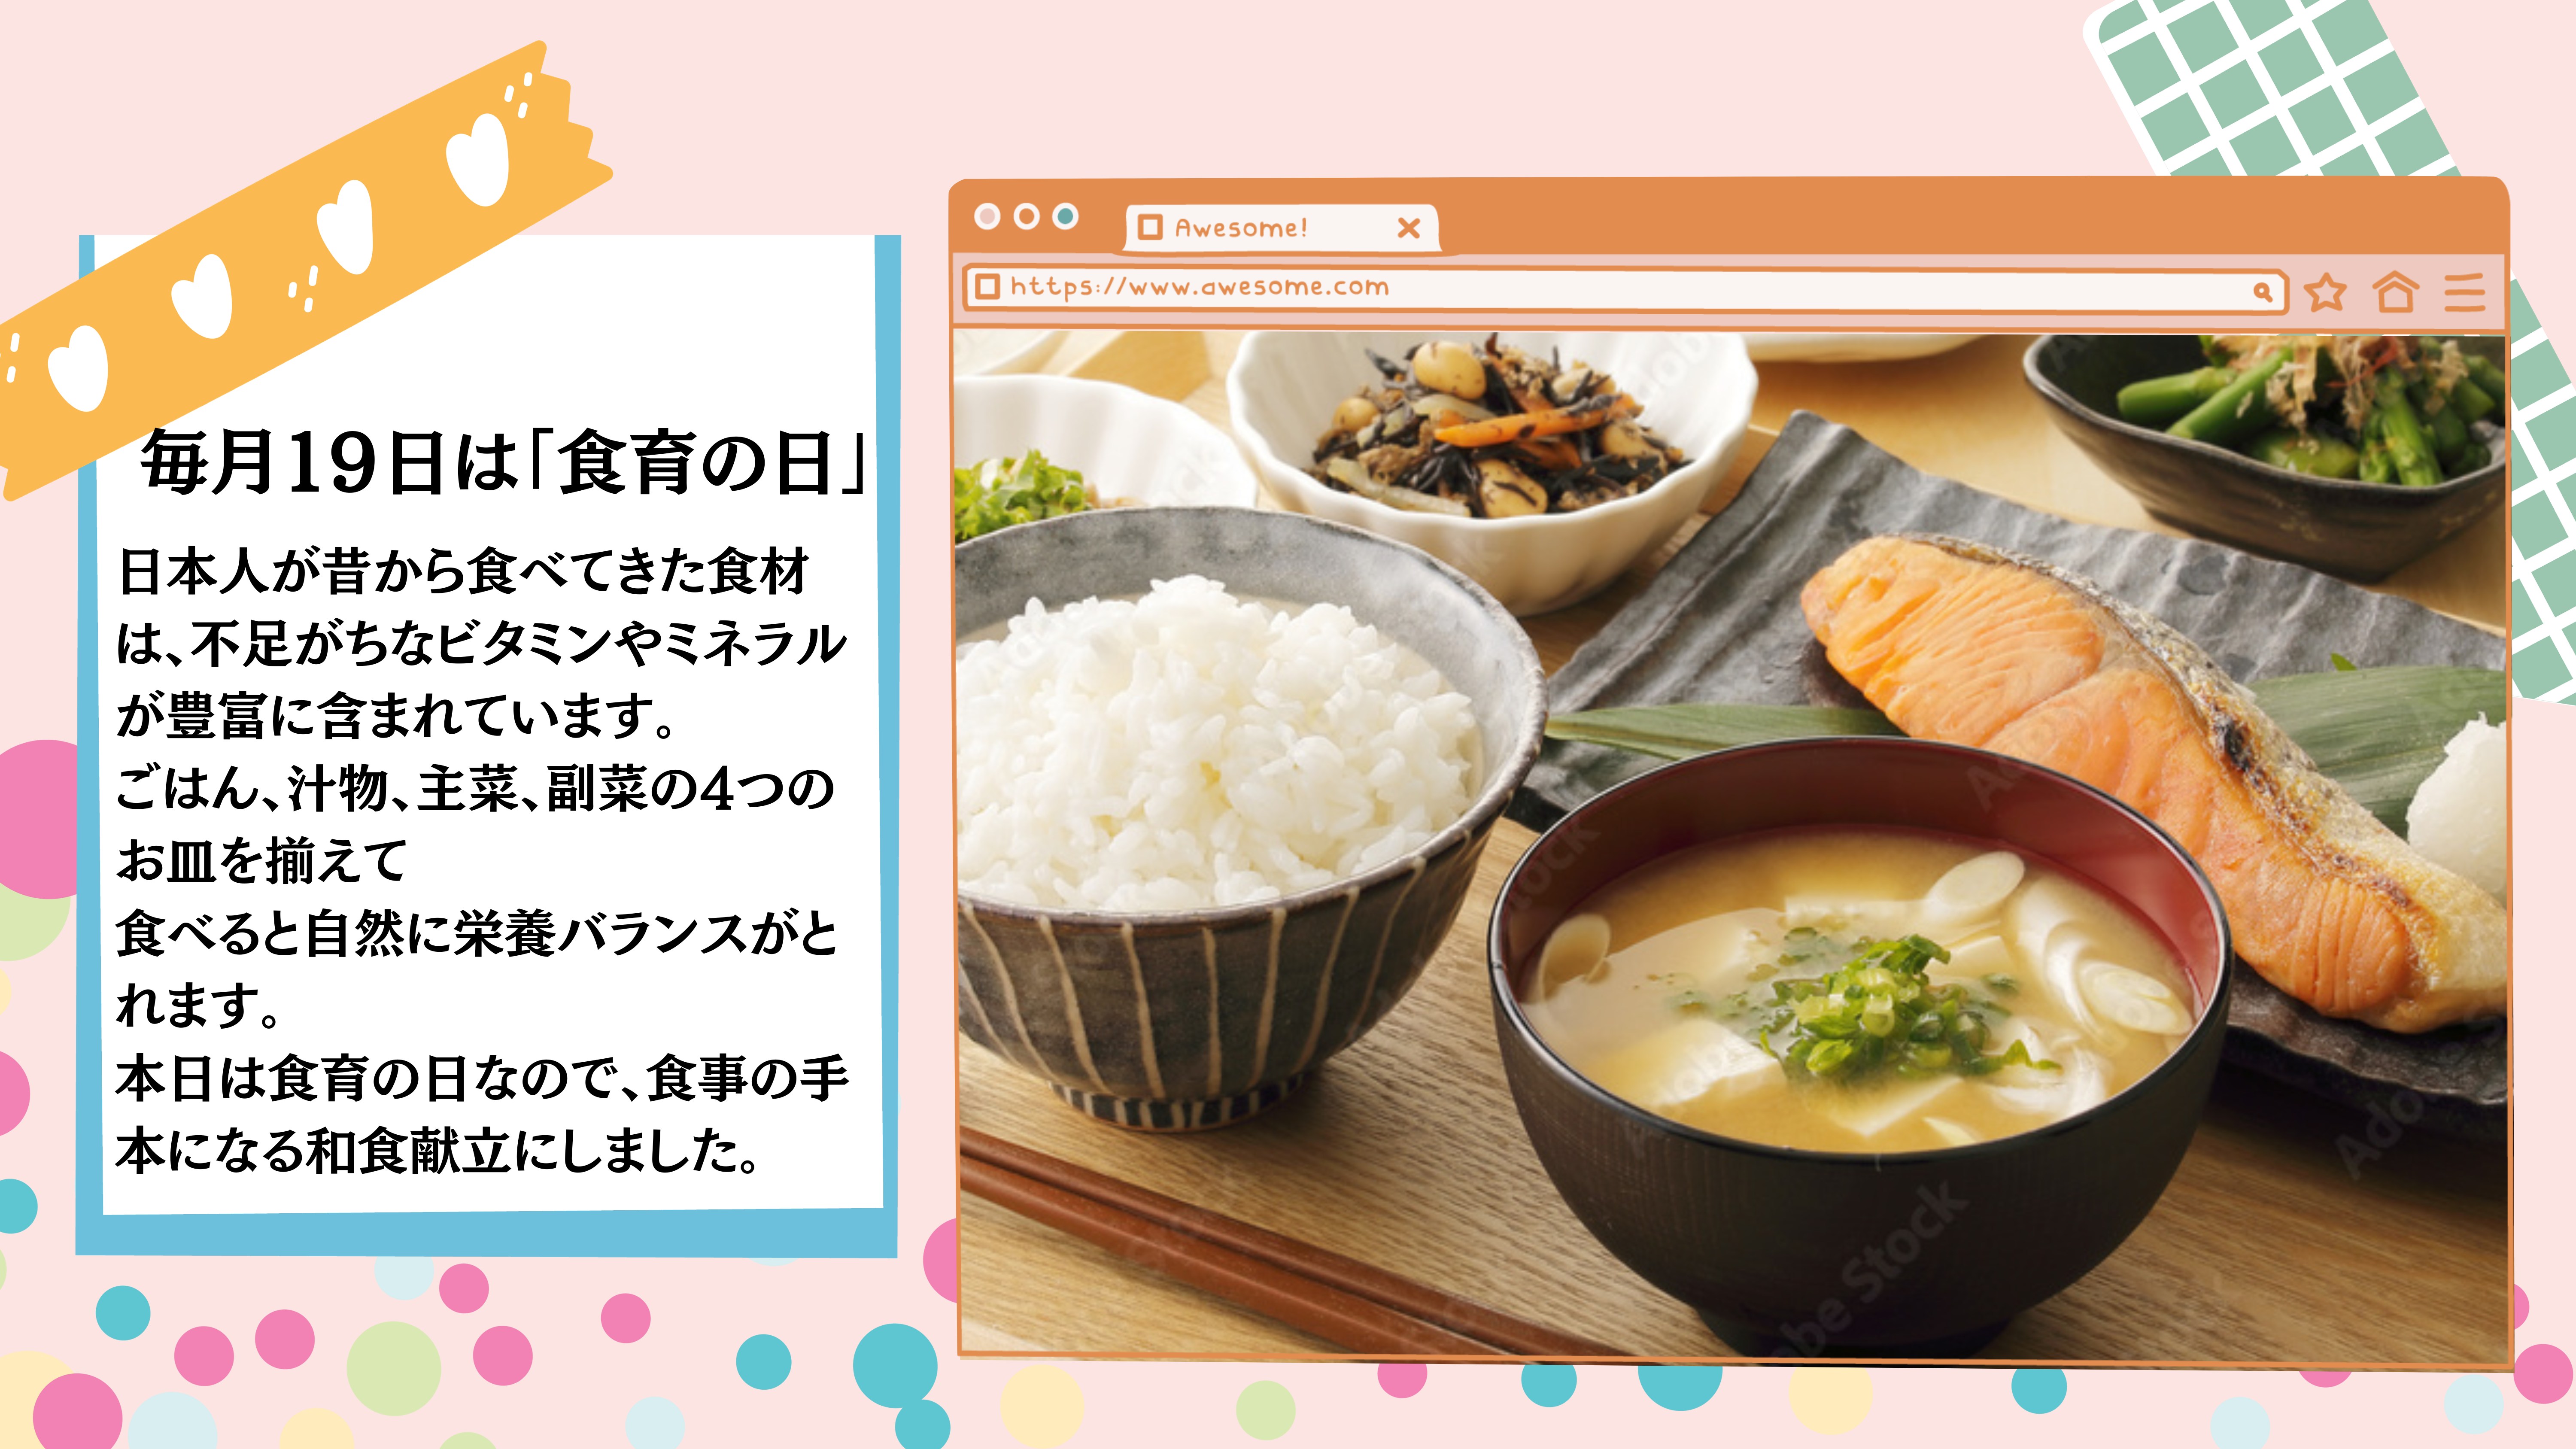 毎月１９日は「食育の日」：日本人が昔から食べてきた食材は、不足がちなビタミンやミネラルが豊富に含まれています。 ごはん、汁物、主菜、副菜の4つのお皿を揃えて 食べると自然に栄養バランスがとれます。 本日は食育の日なので、食事の手本になる和食献立にしました。